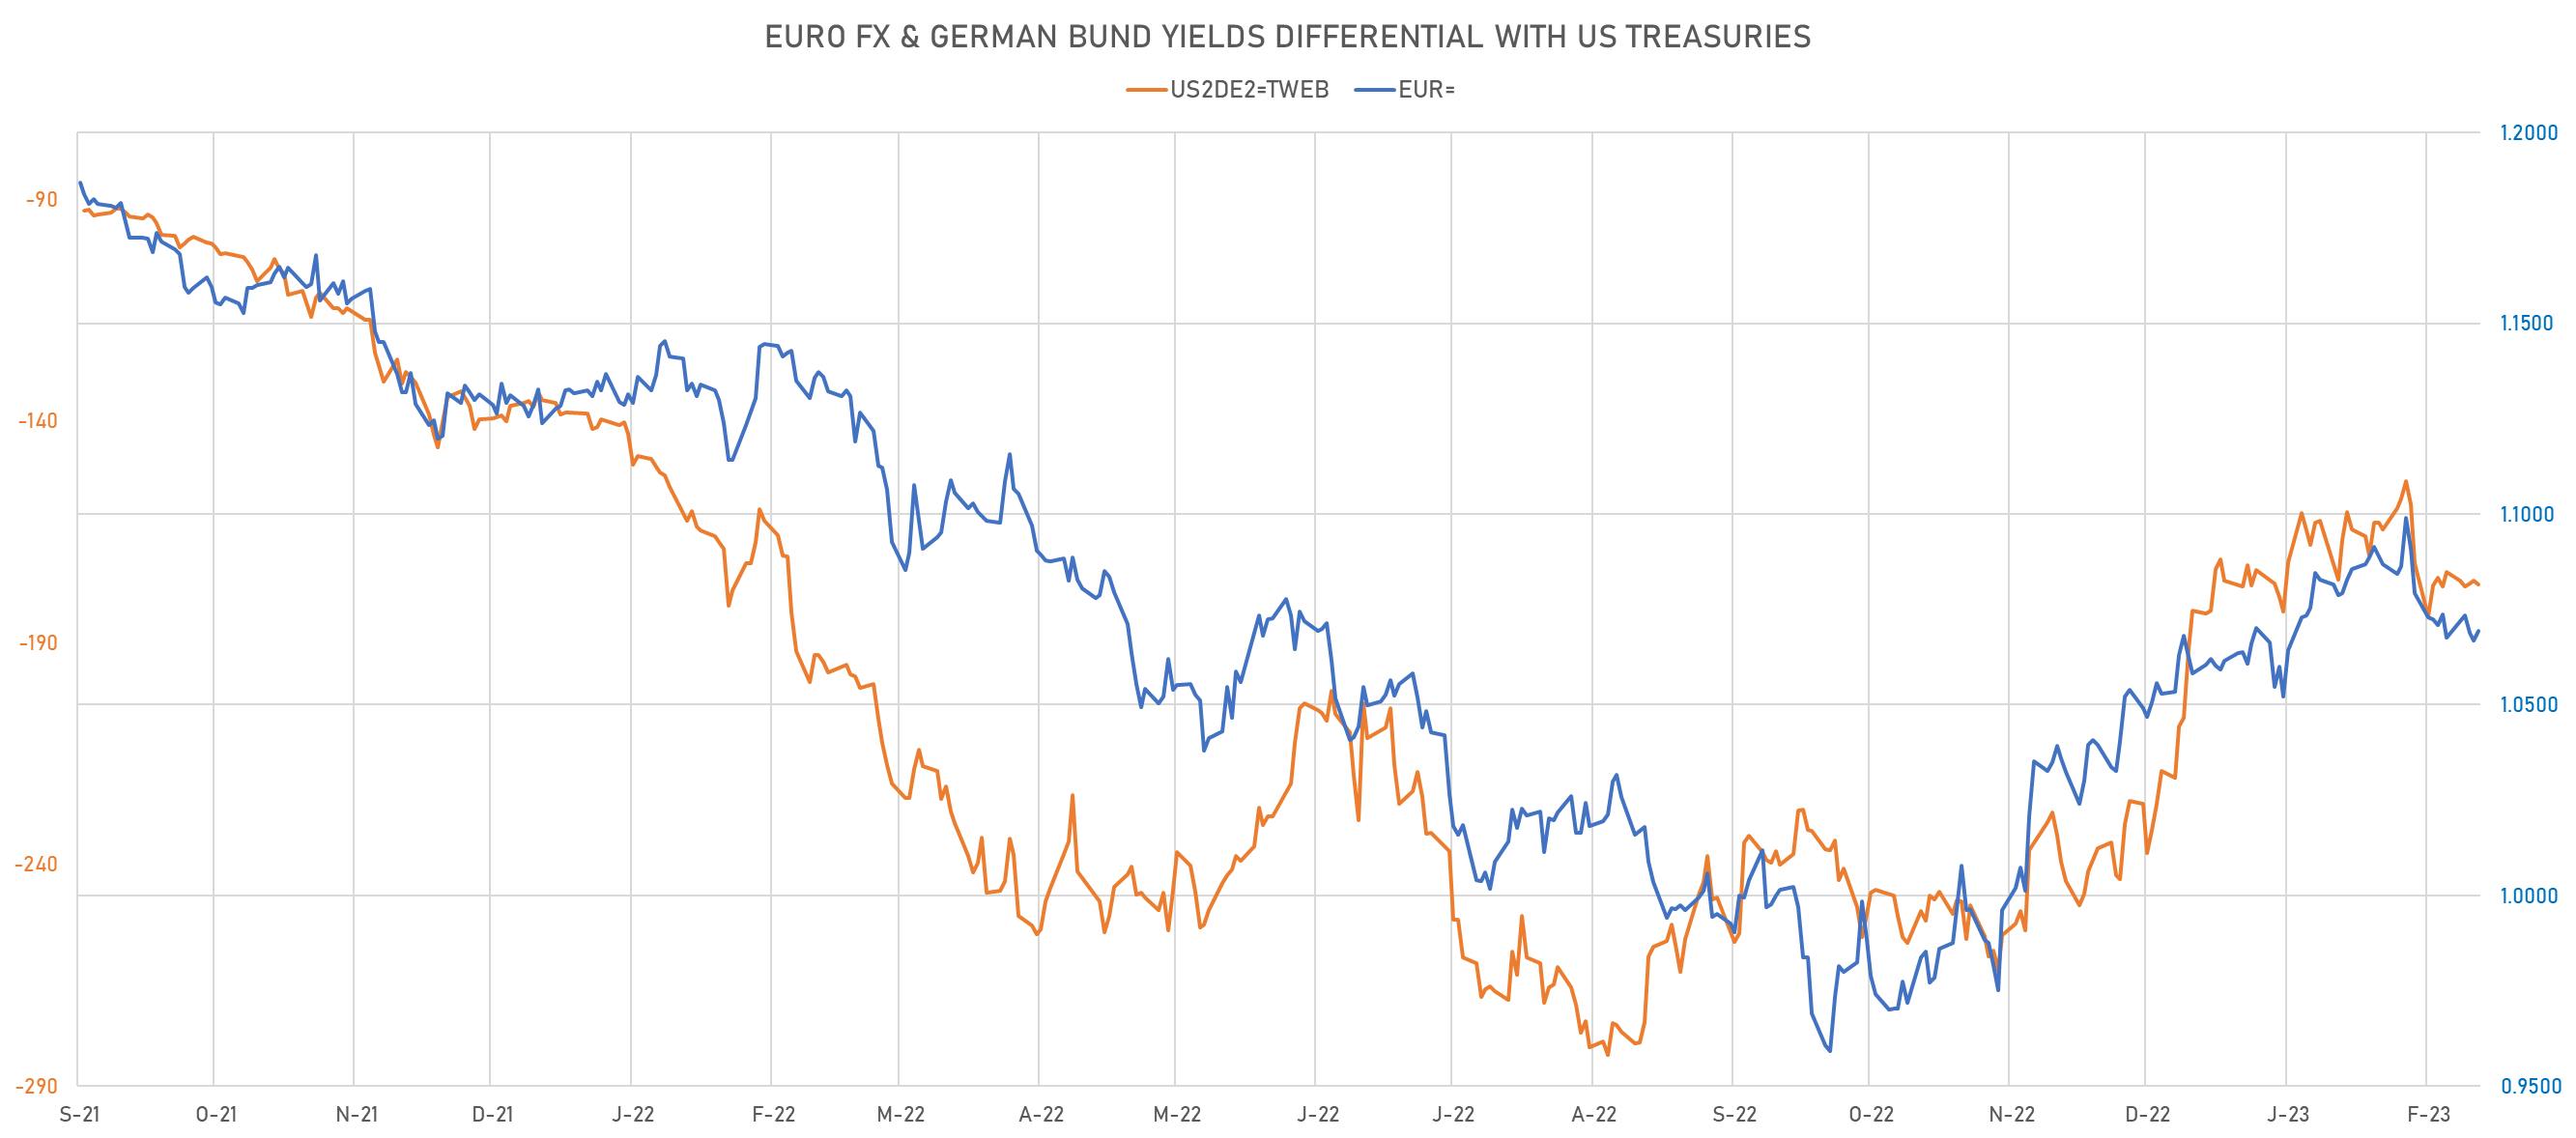 2Y US-DE Rates Differential vs EUR/USD Spot | Sources: phipost.com, Refinitiv data